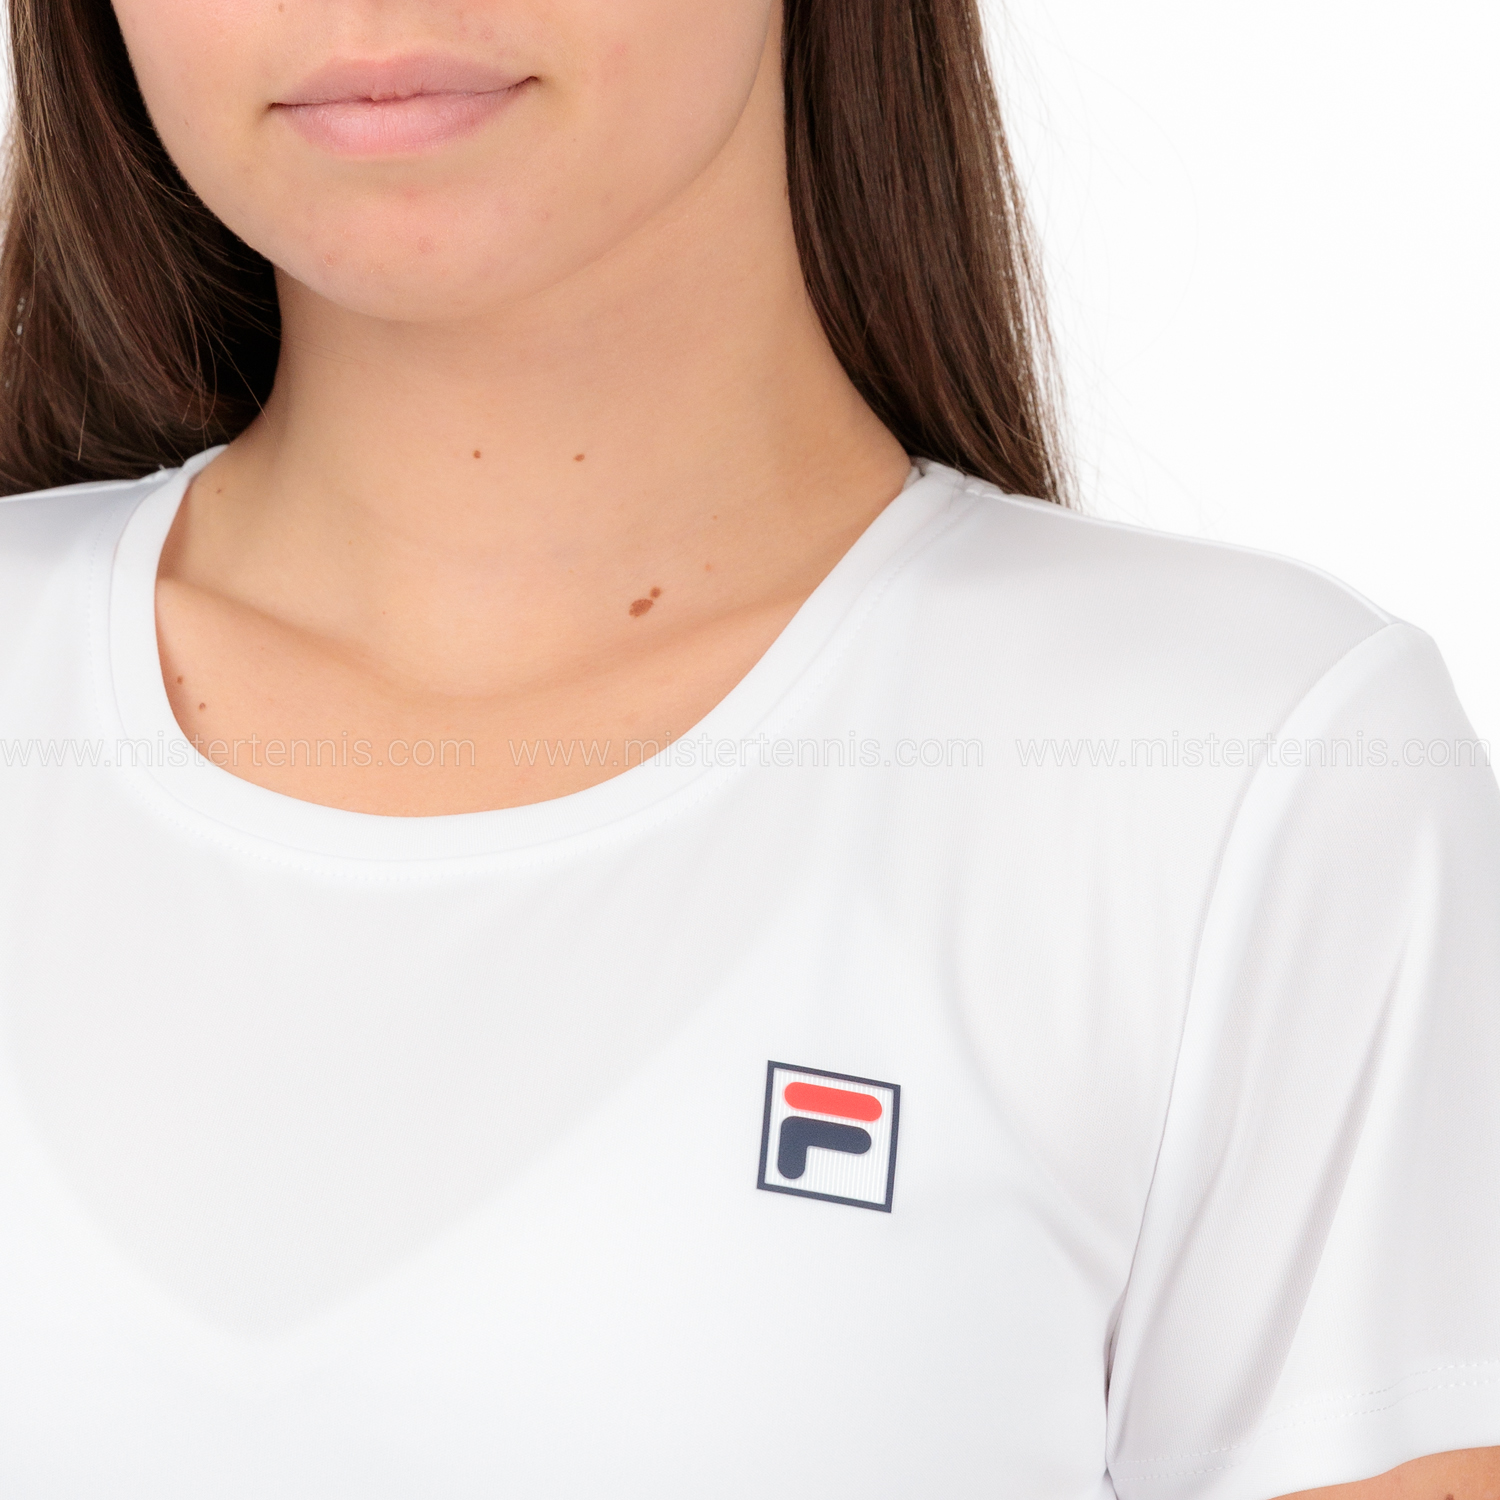 Fila Leonie T-Shirt - White